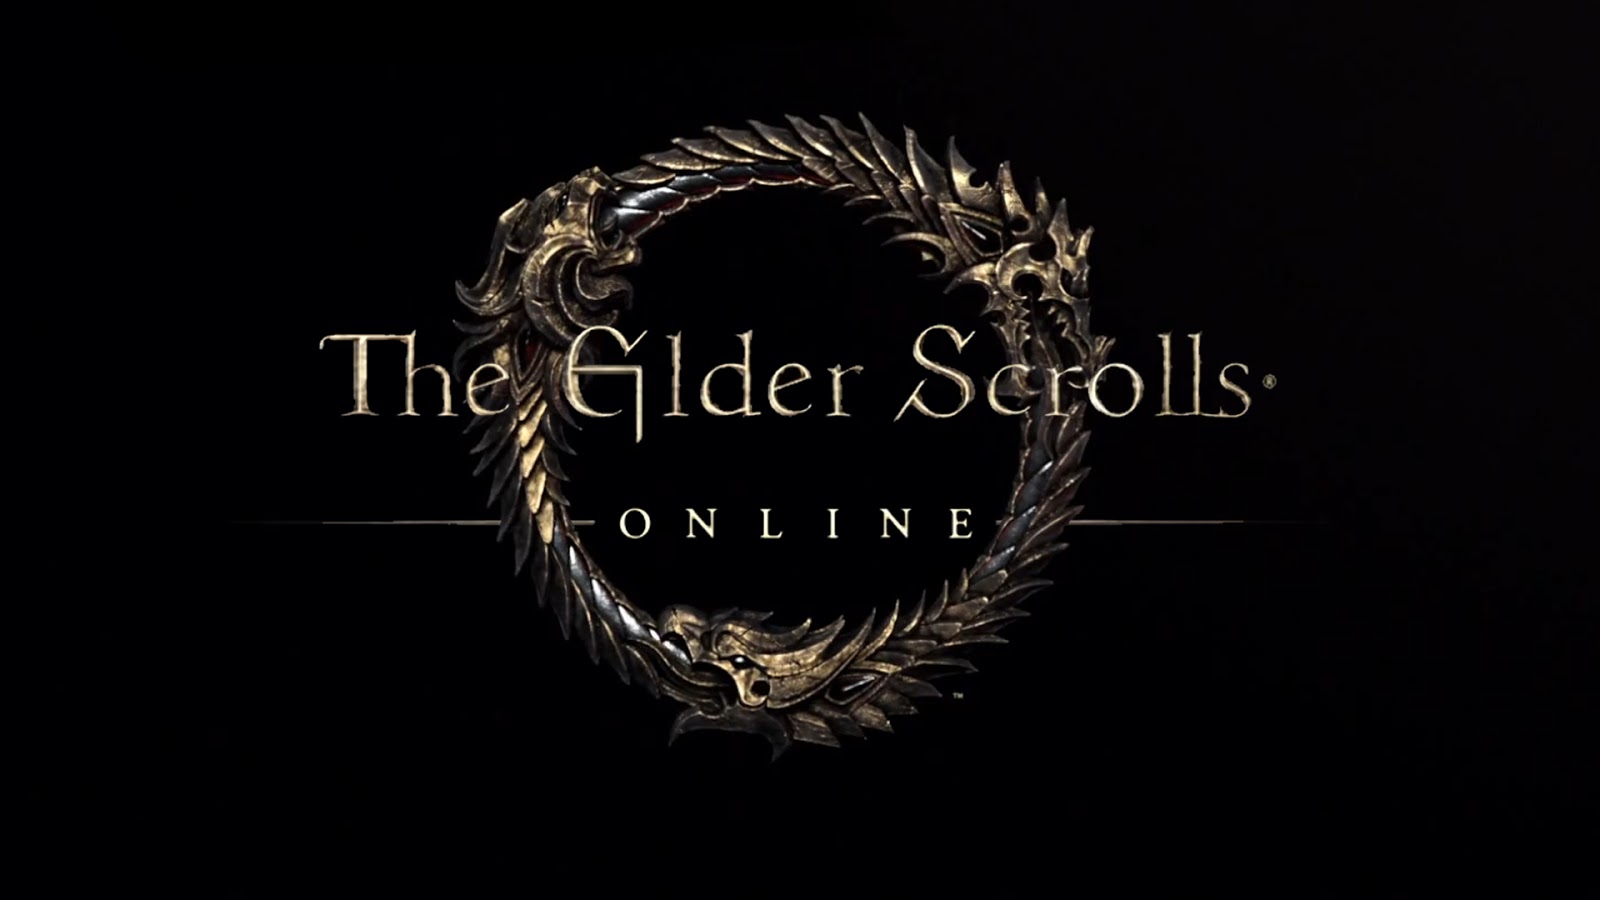 The Elder Scrolls Online abandona modelo de assinatura e será grátis